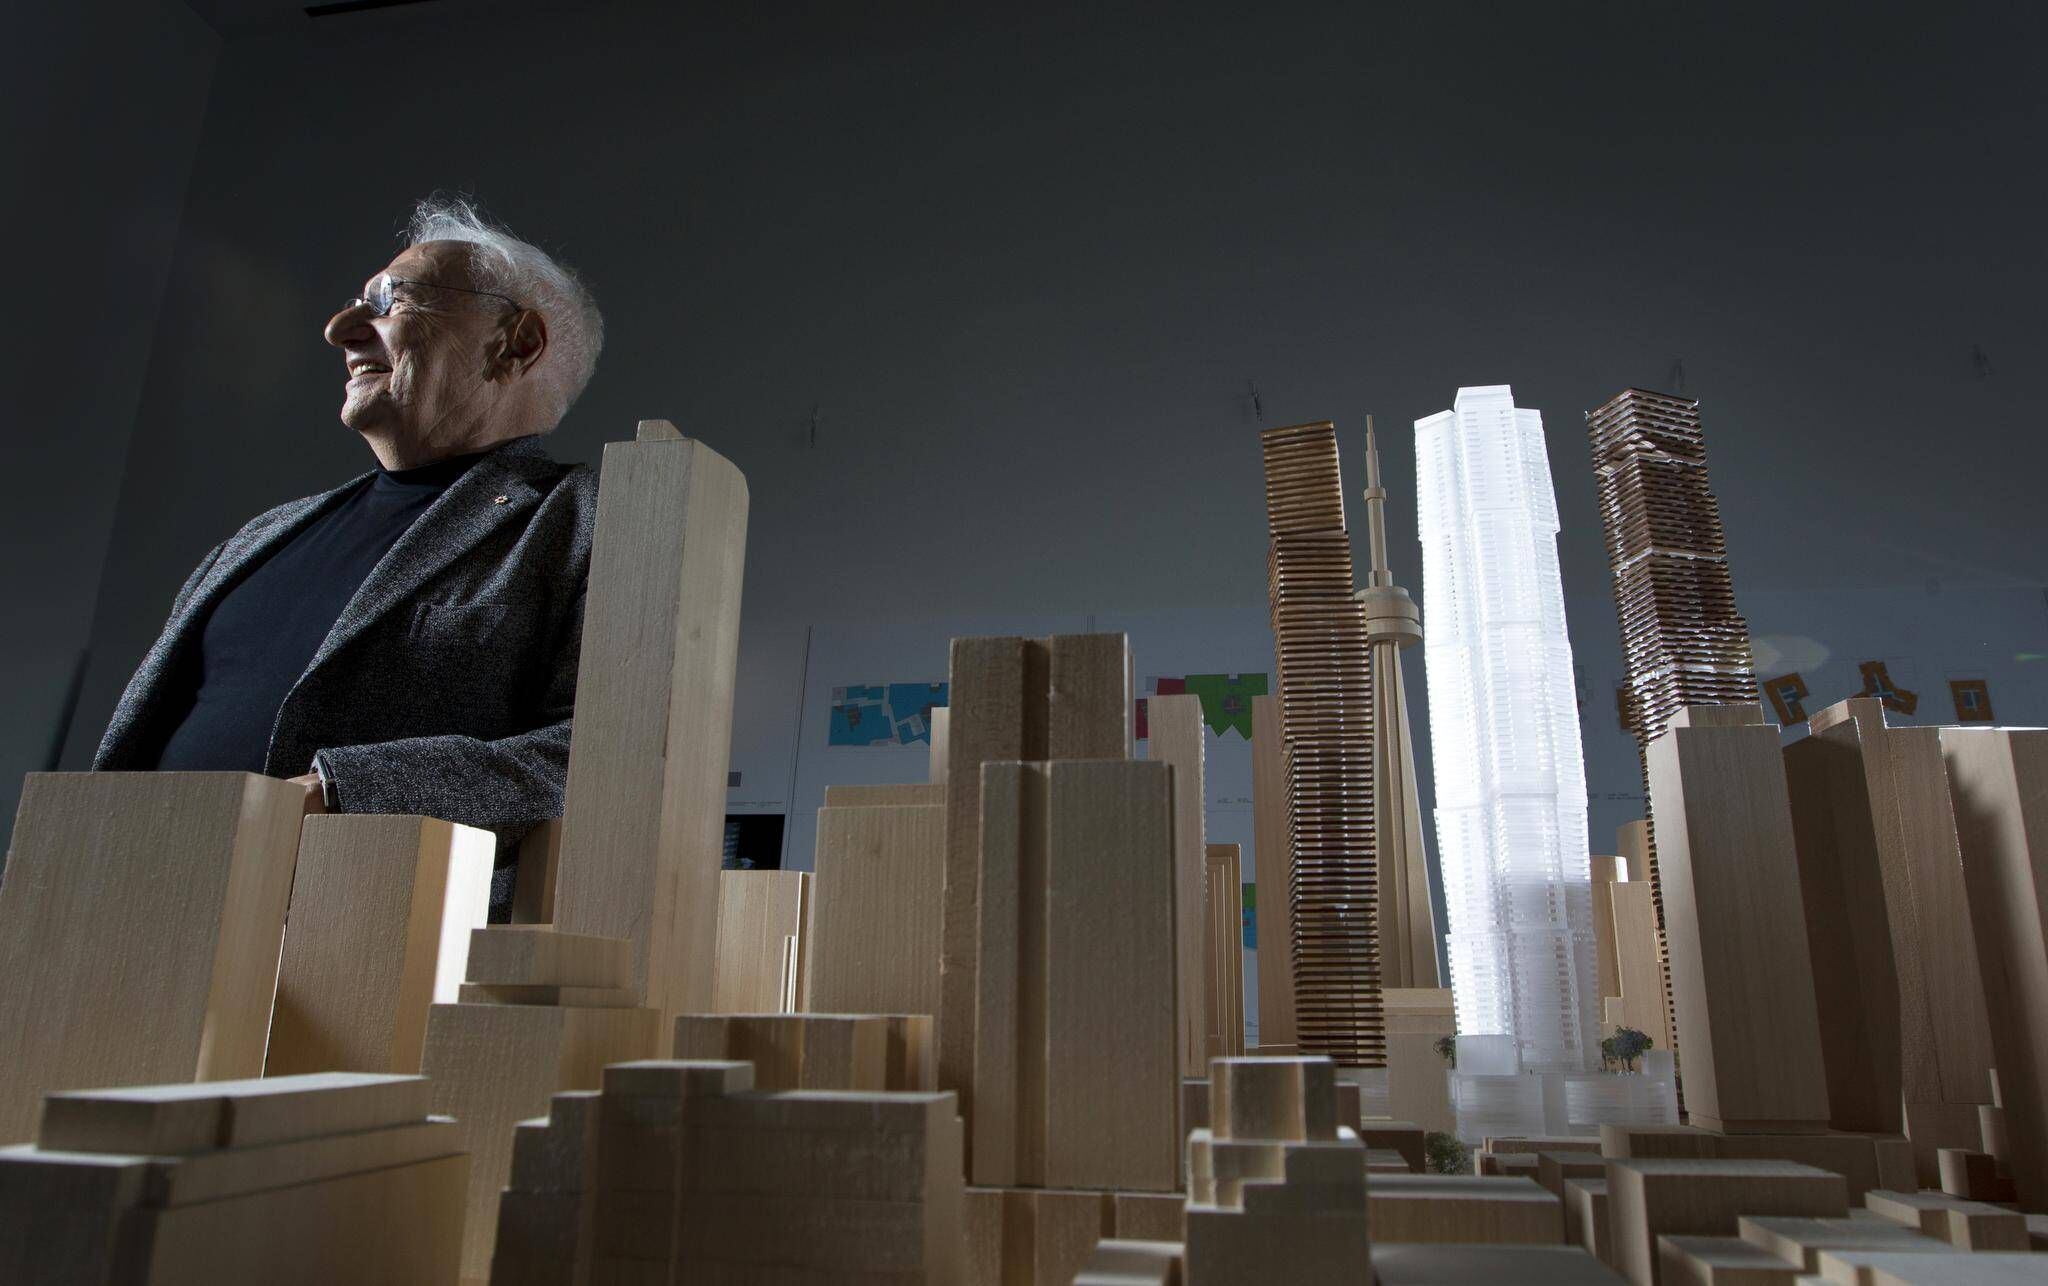 Гэри фрэнк. Фрэнк Гери. Фрэнк Гери (Frank Gehry). Фрэнк Оуэн Гери. Фрэнк Гери (1929 г.).